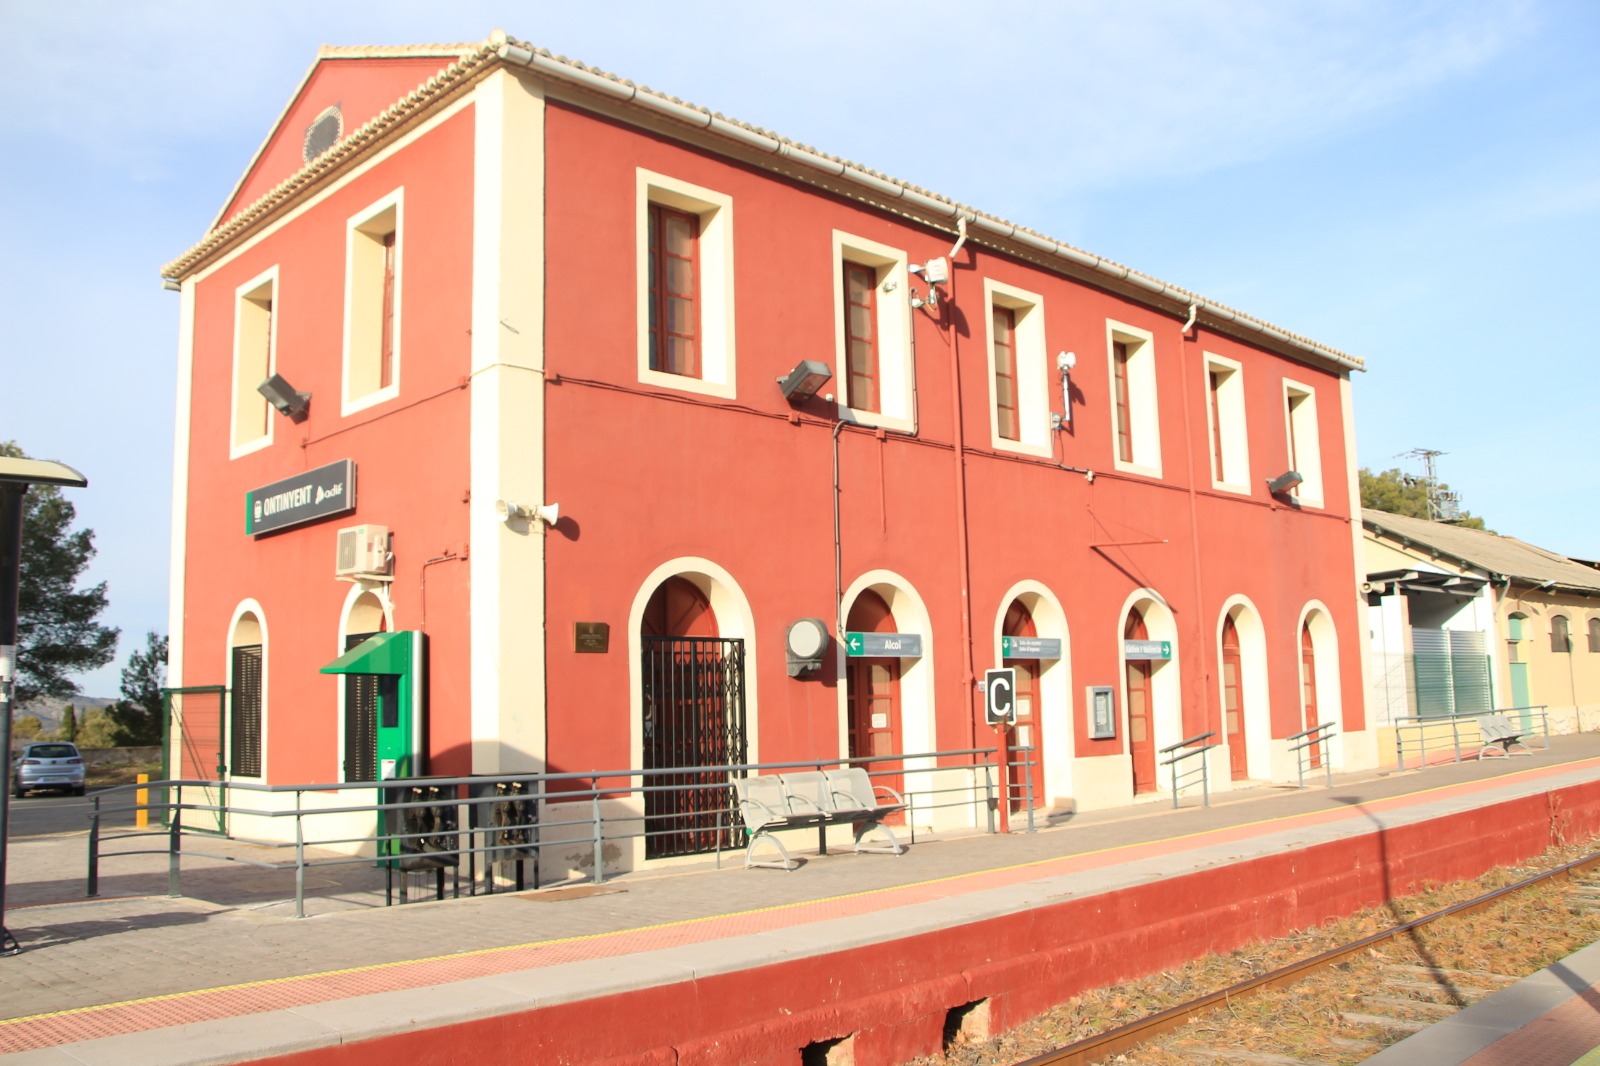 Estación de tren en Ontinyent